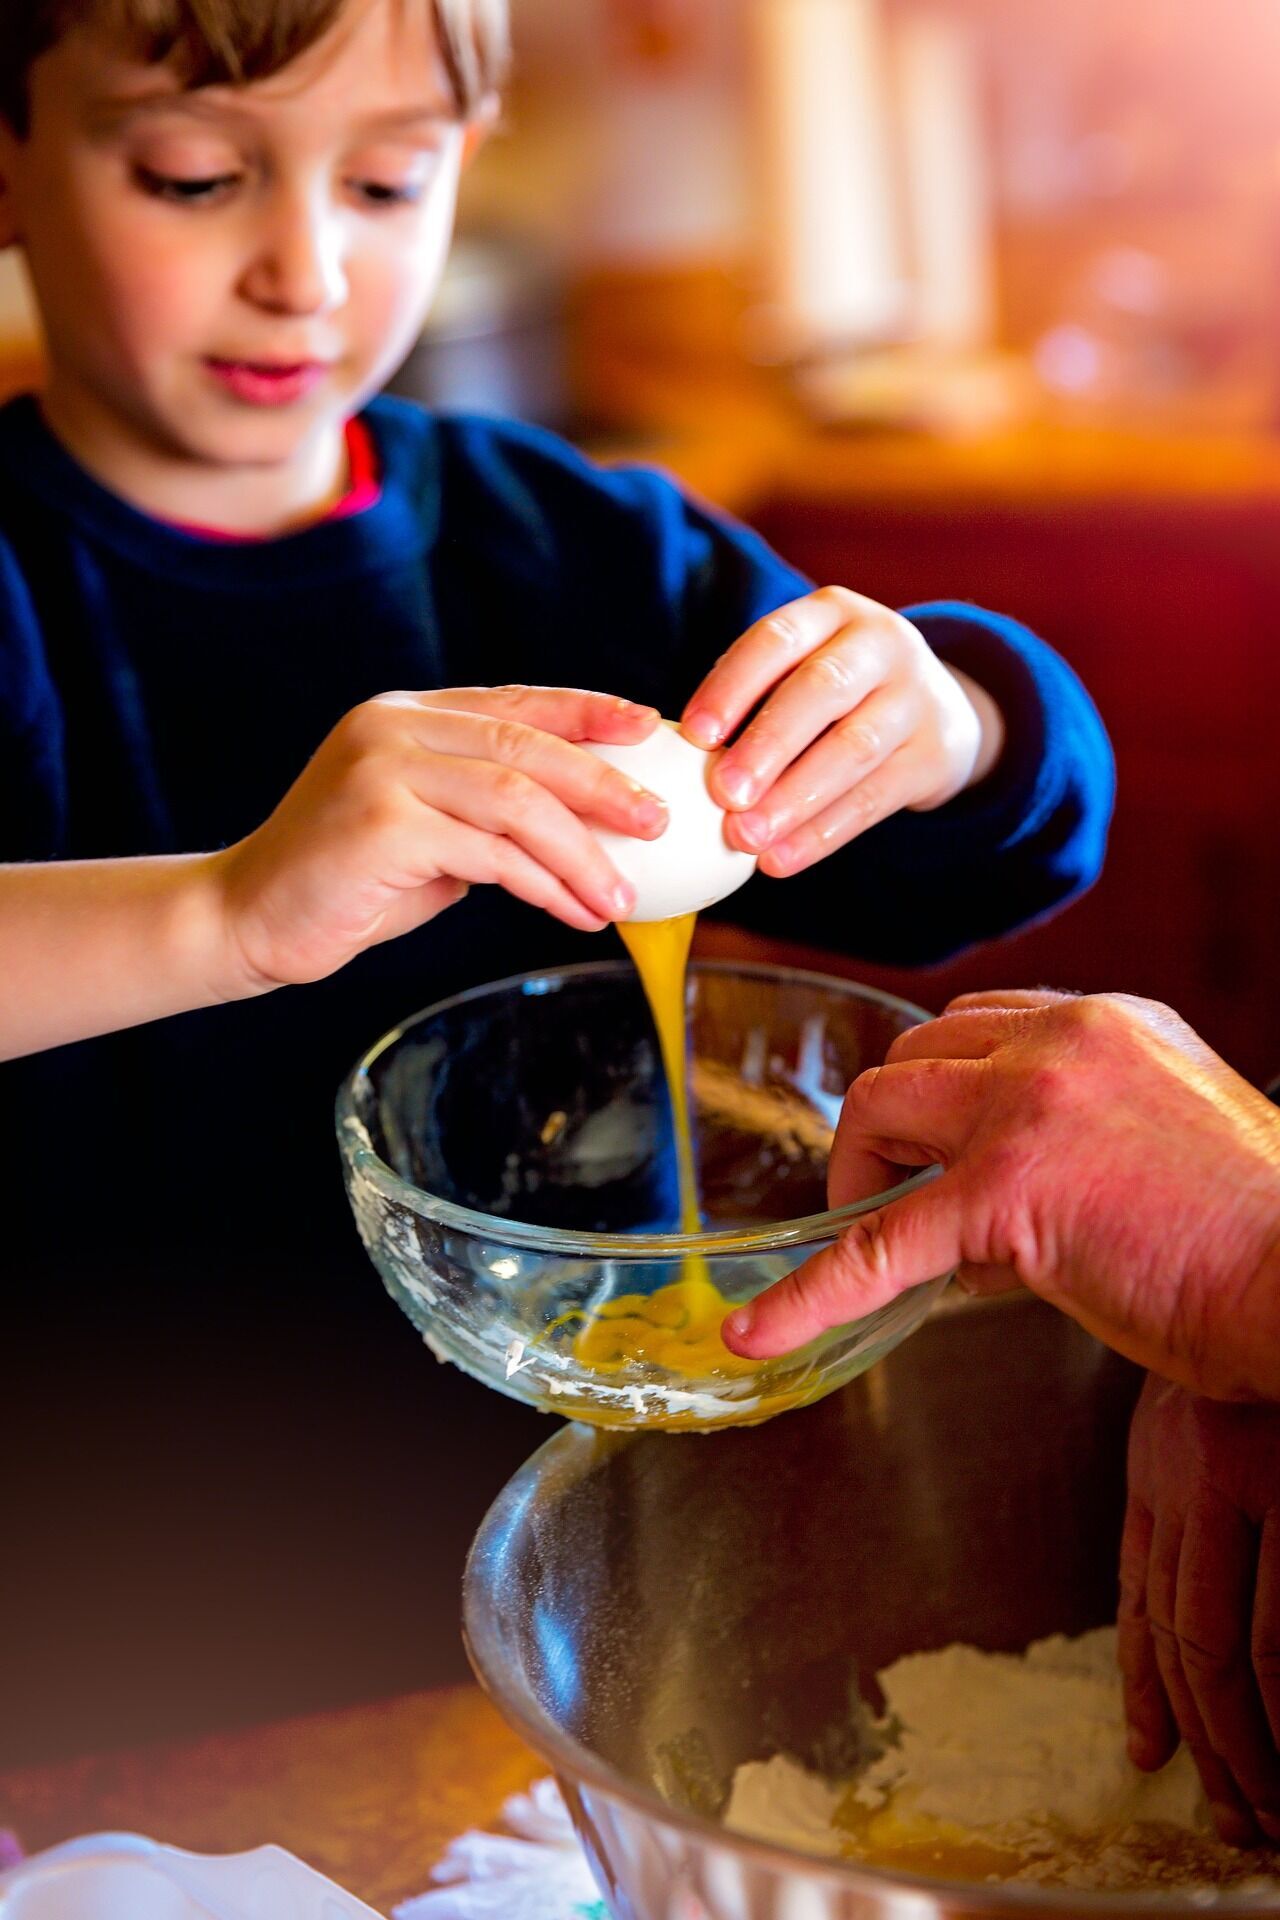 Приготовьте завтрак вместе с ребенком: психолог рассказал о наиболее положительных аспектах ''кулинарной'' терапии